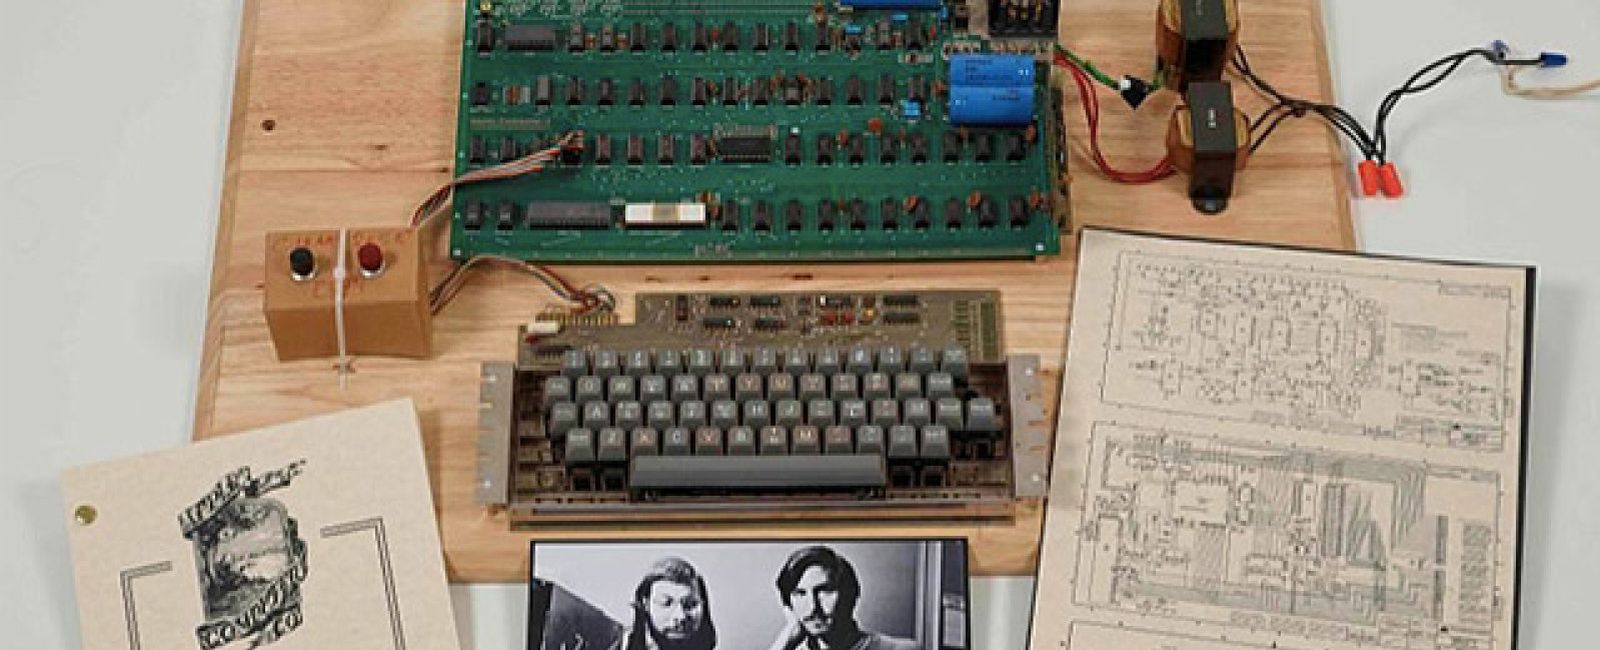 Foto: Sale a subasta el primer ordenador Apple creado por Steve Jobs y Wozniak